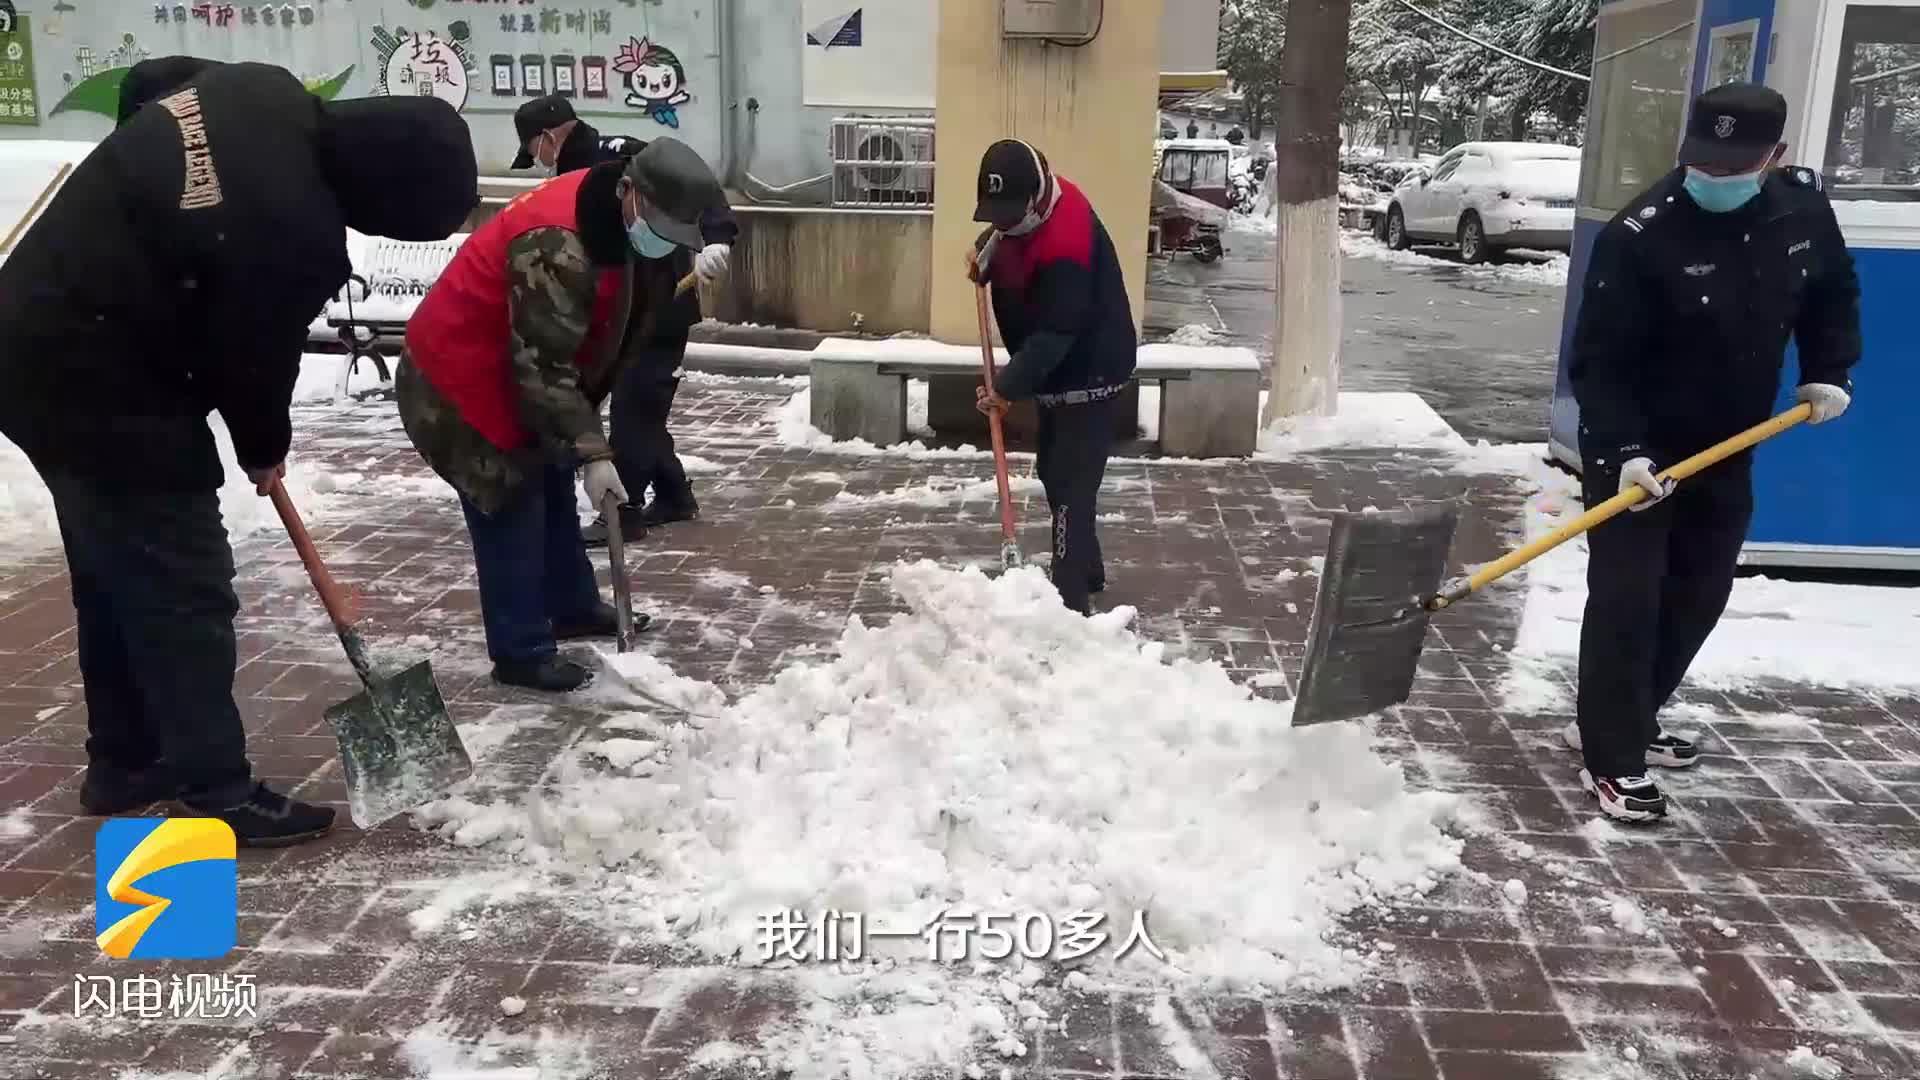 “大家出行方便！” 行动传温情 济南玉函小区开展扫雪志愿服务